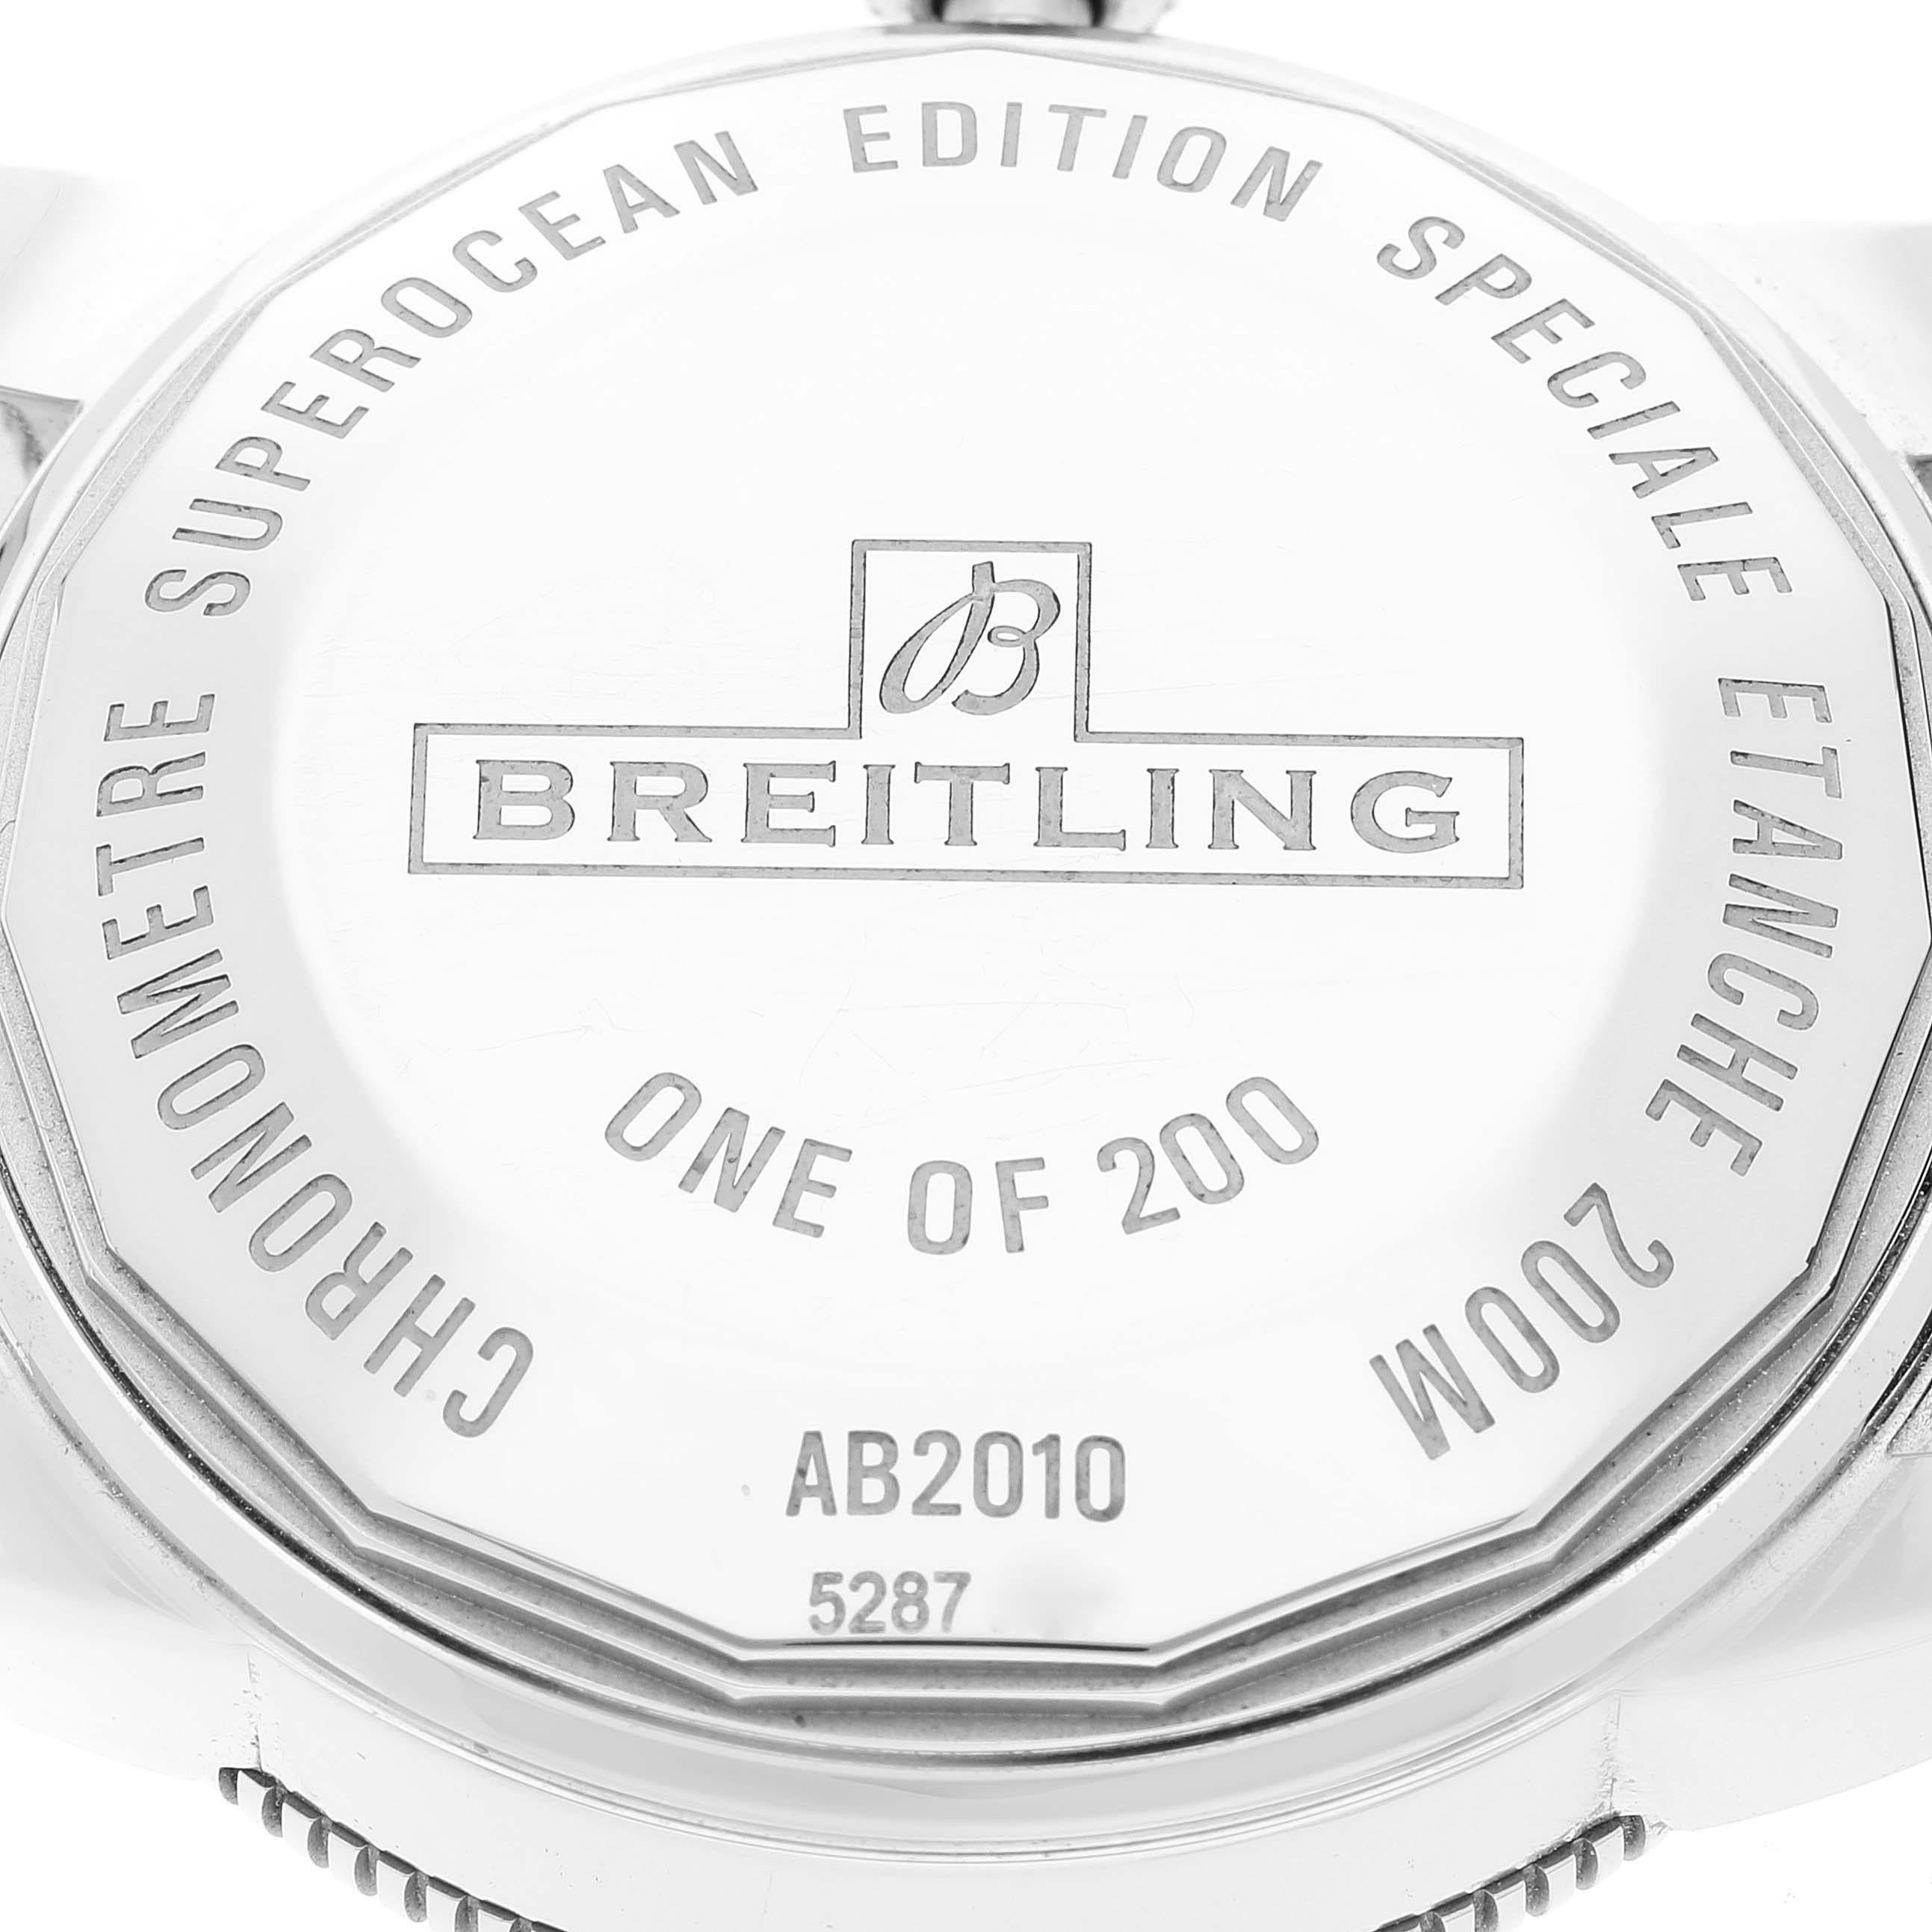 Breitling Superocean Heritage II Ice Blue Dial Steel Mens Watch AB2010 Unworn 3